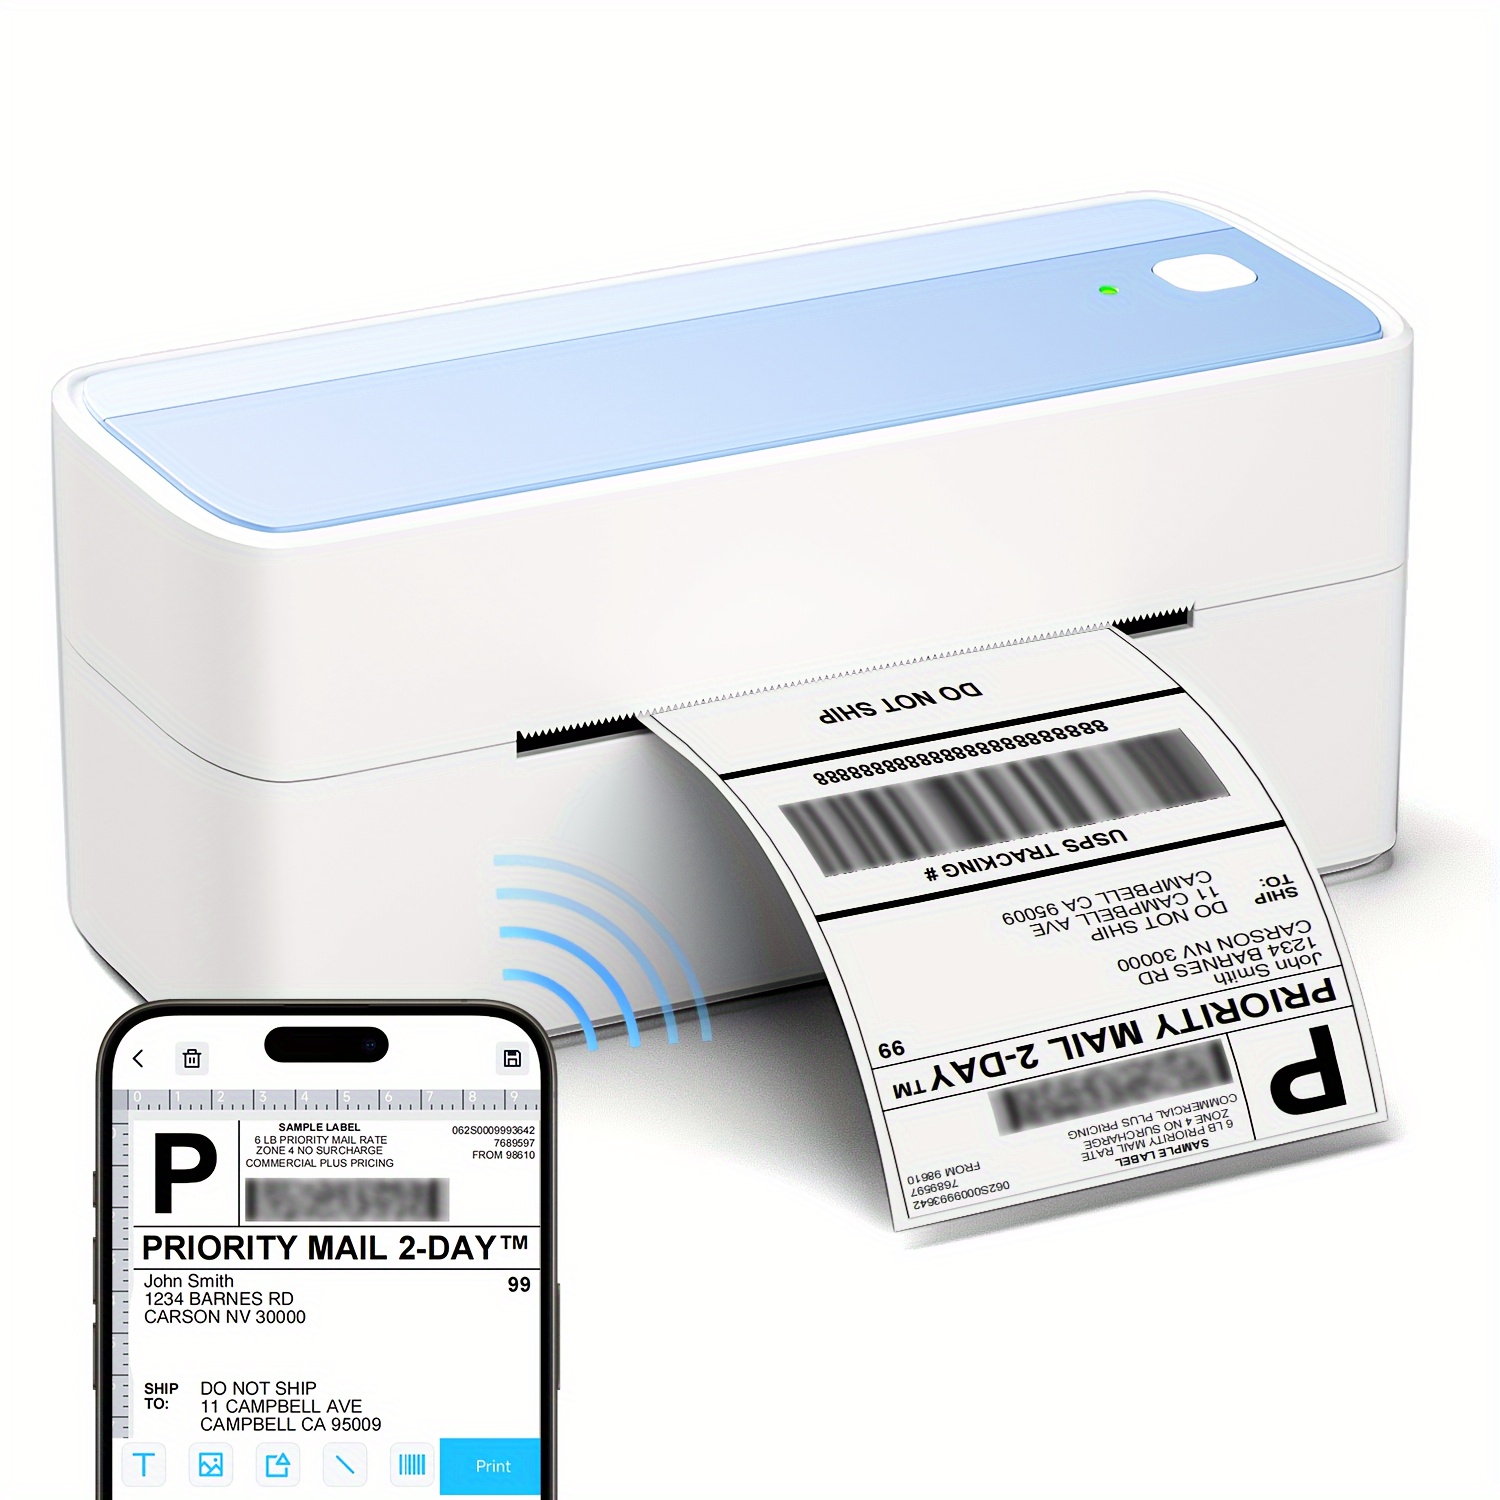 Portable Imprimante Etiquette,étiqueteuse Bluetooth Mini Imprimante  Thermique d'étiquettes Con a Etiquette Autocollante Compatible Android et  iOS pour